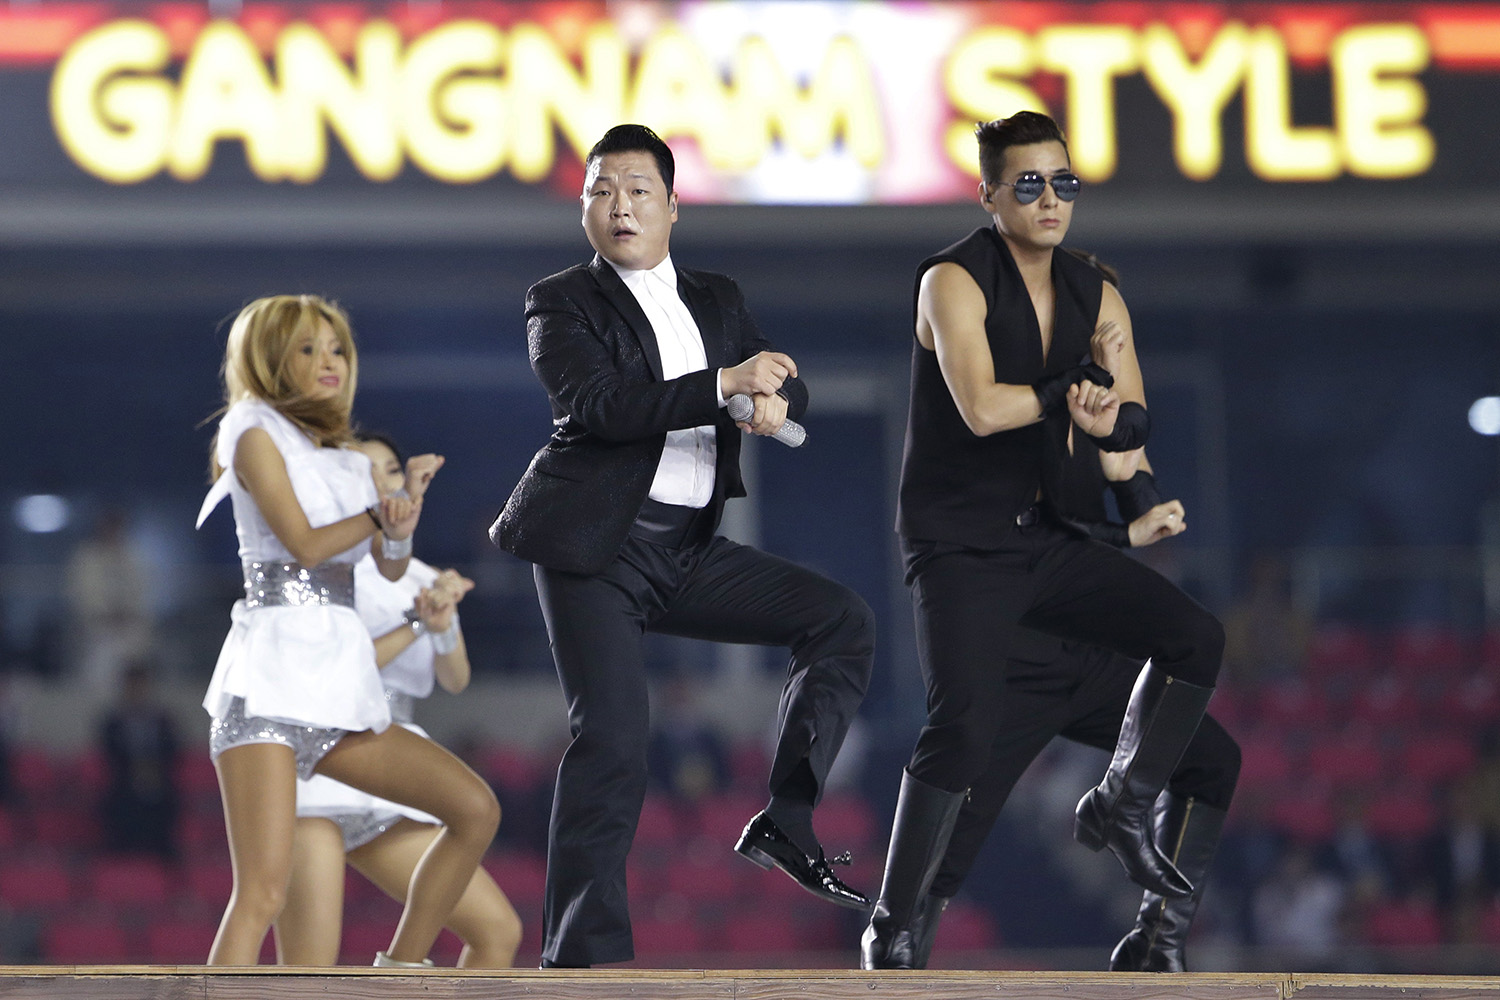 Demasiados clicks para el video de la canción Gangnam Style